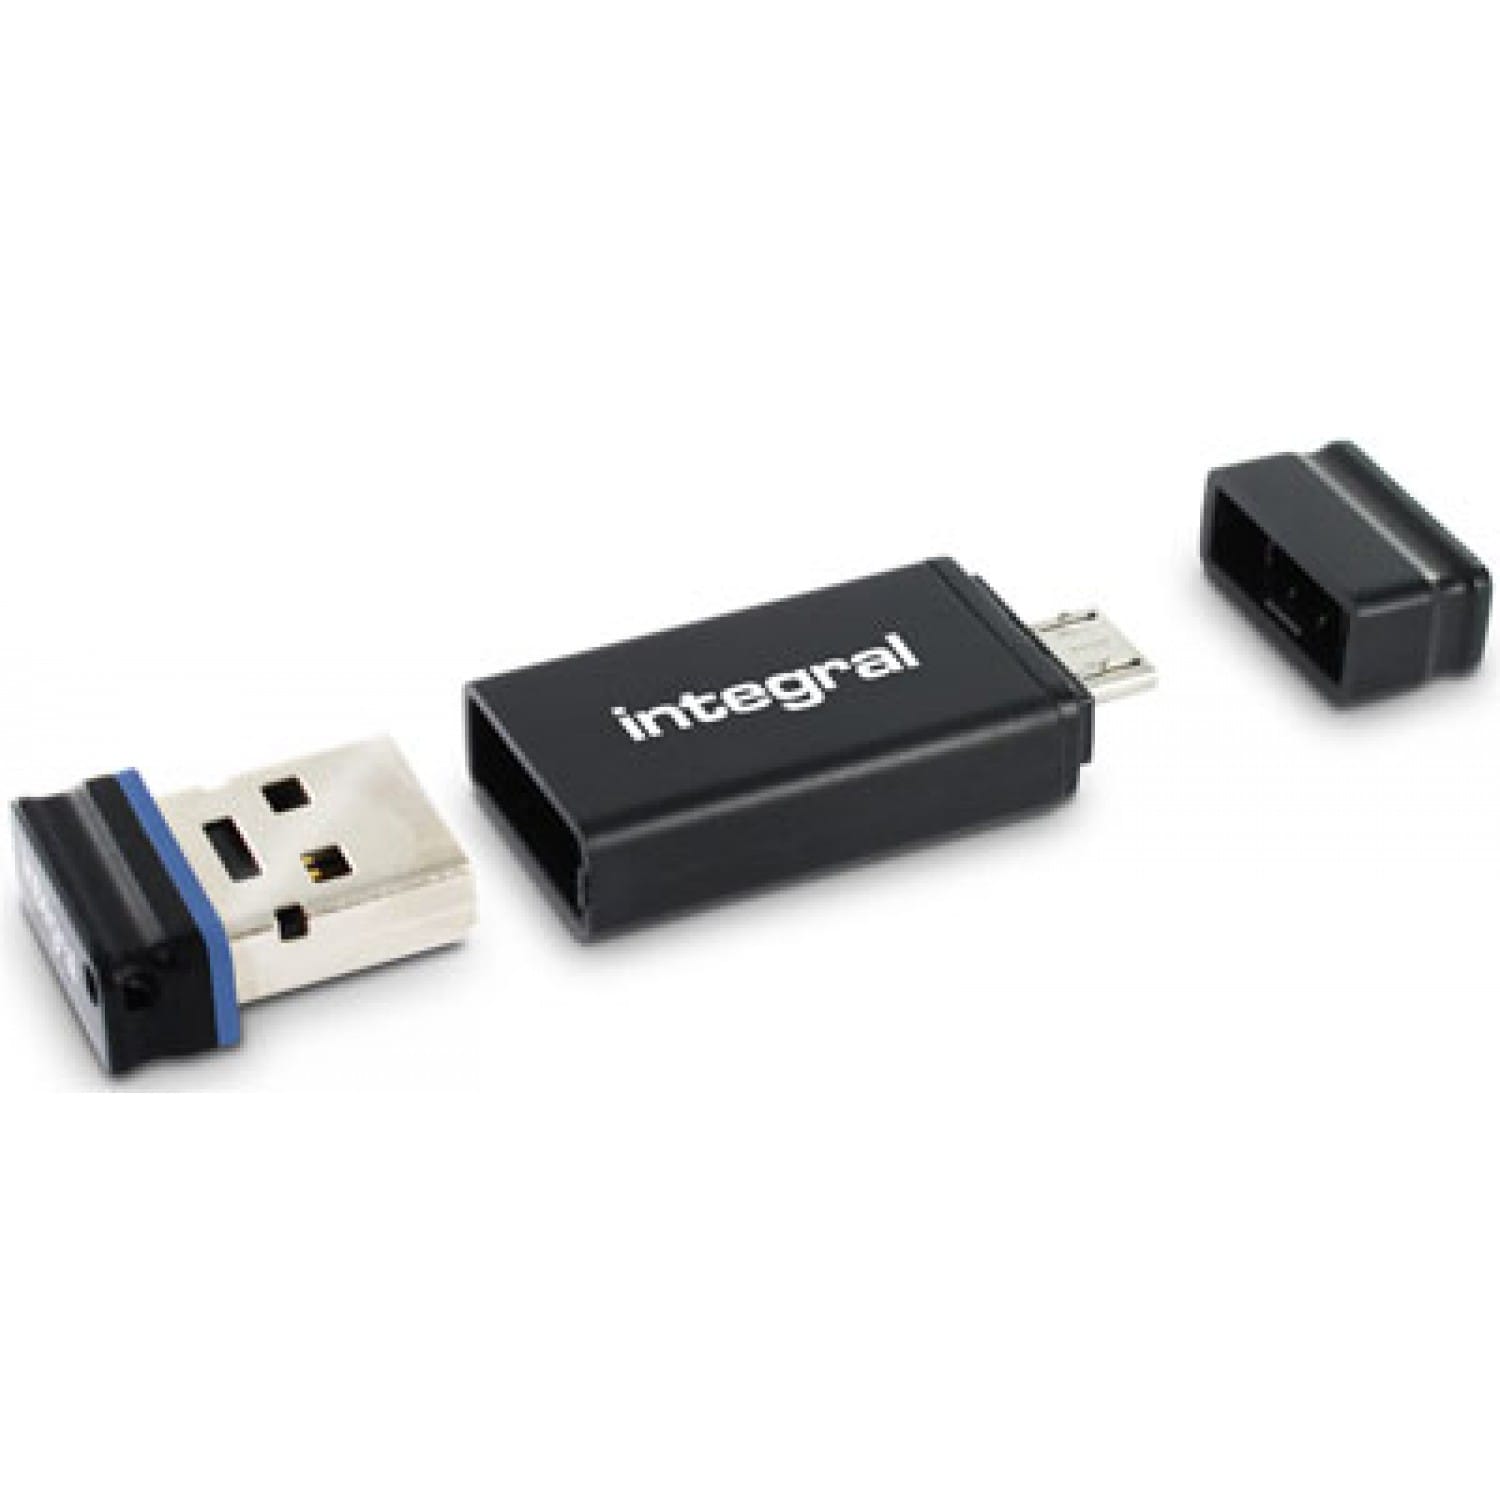 Clé USB Type C 3.0 pour connectique smartphone